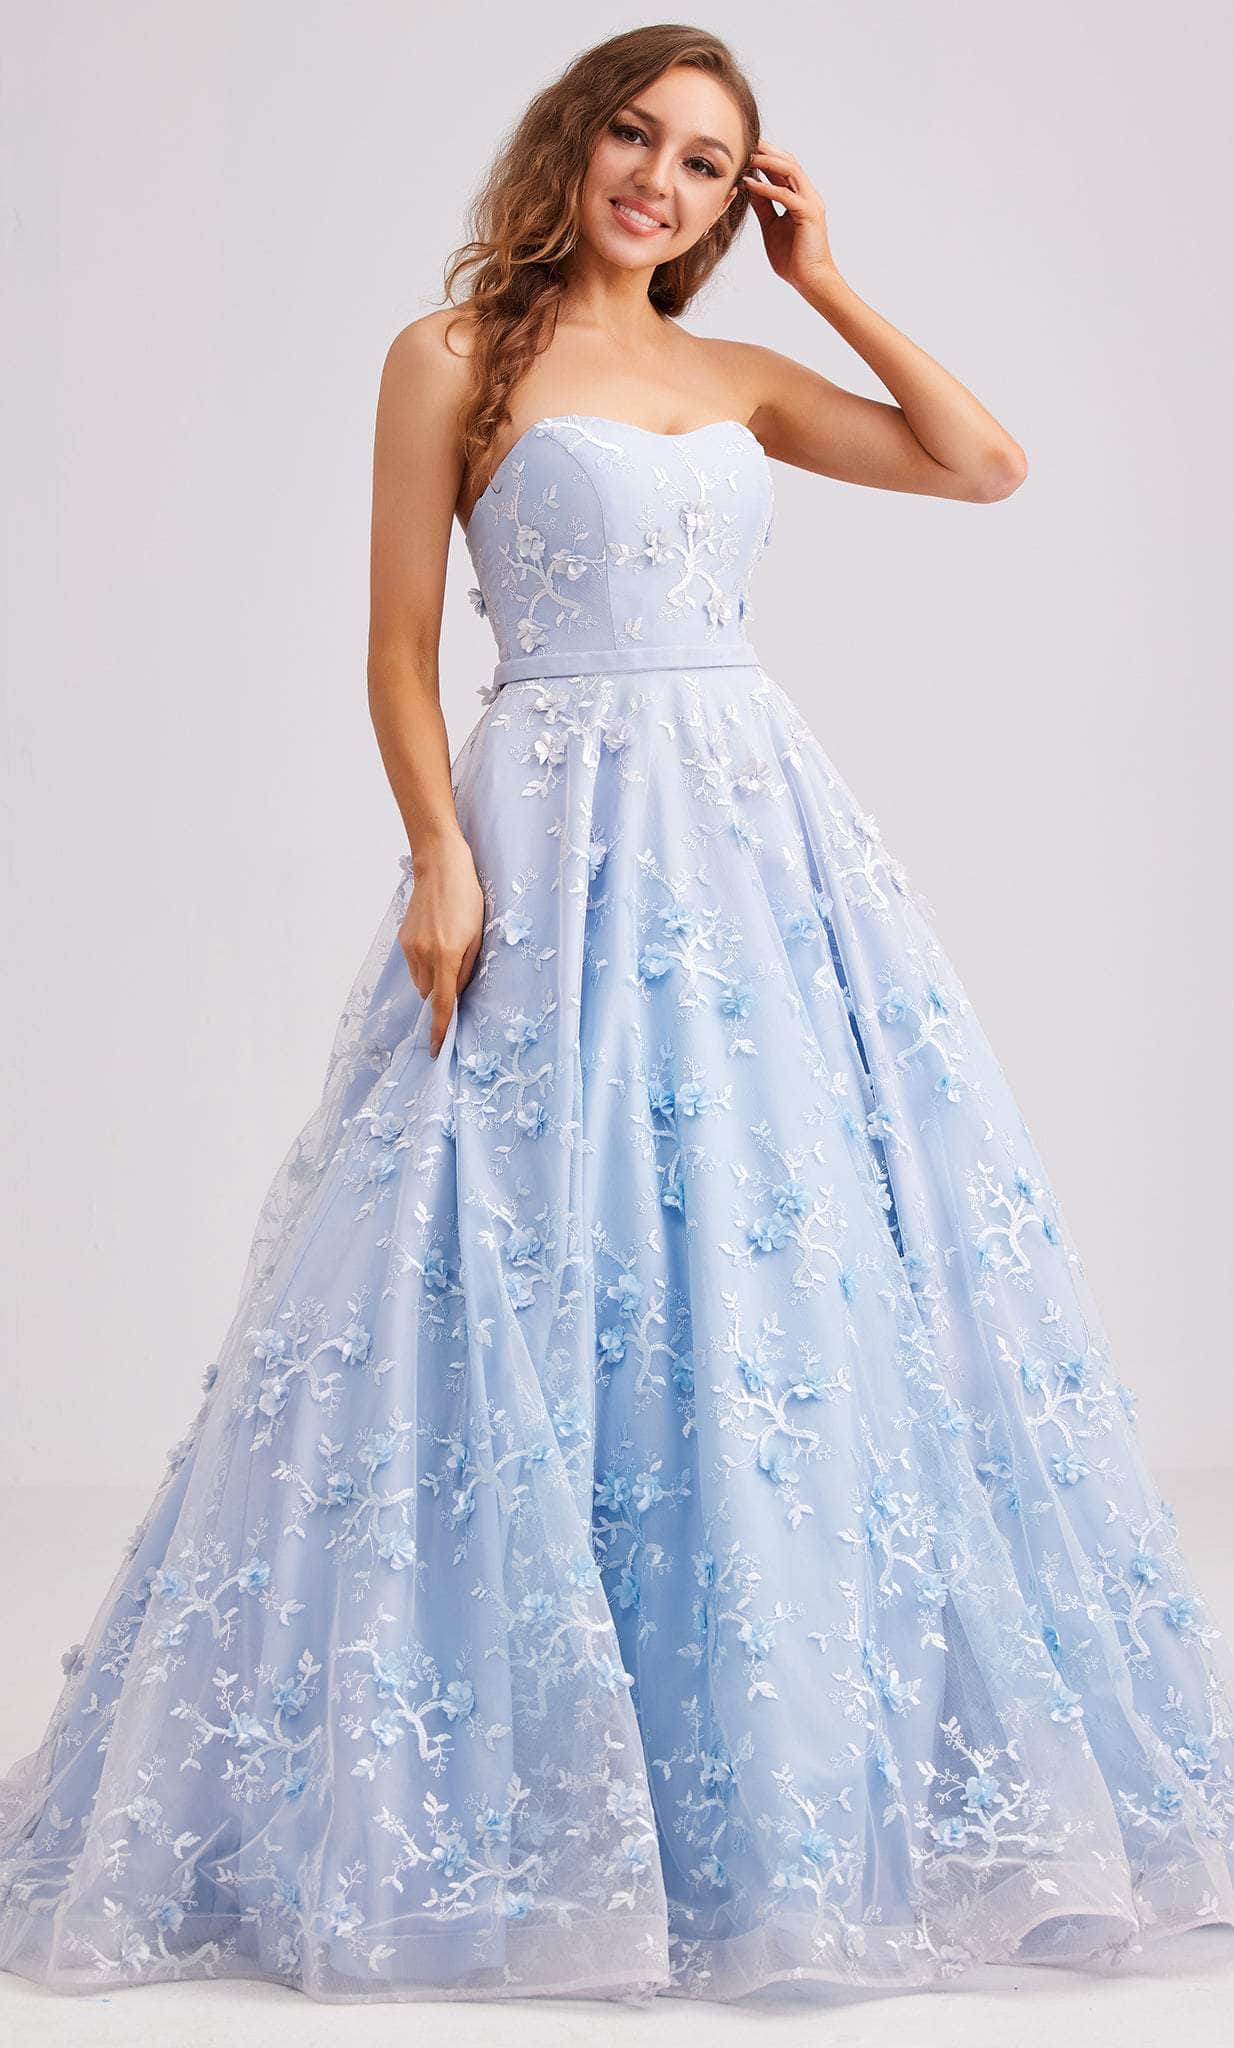 J'Adore Dresses J23033 - Strapless Floral Applique Evening Dress Special Occasion Dress 2 / Light Blue